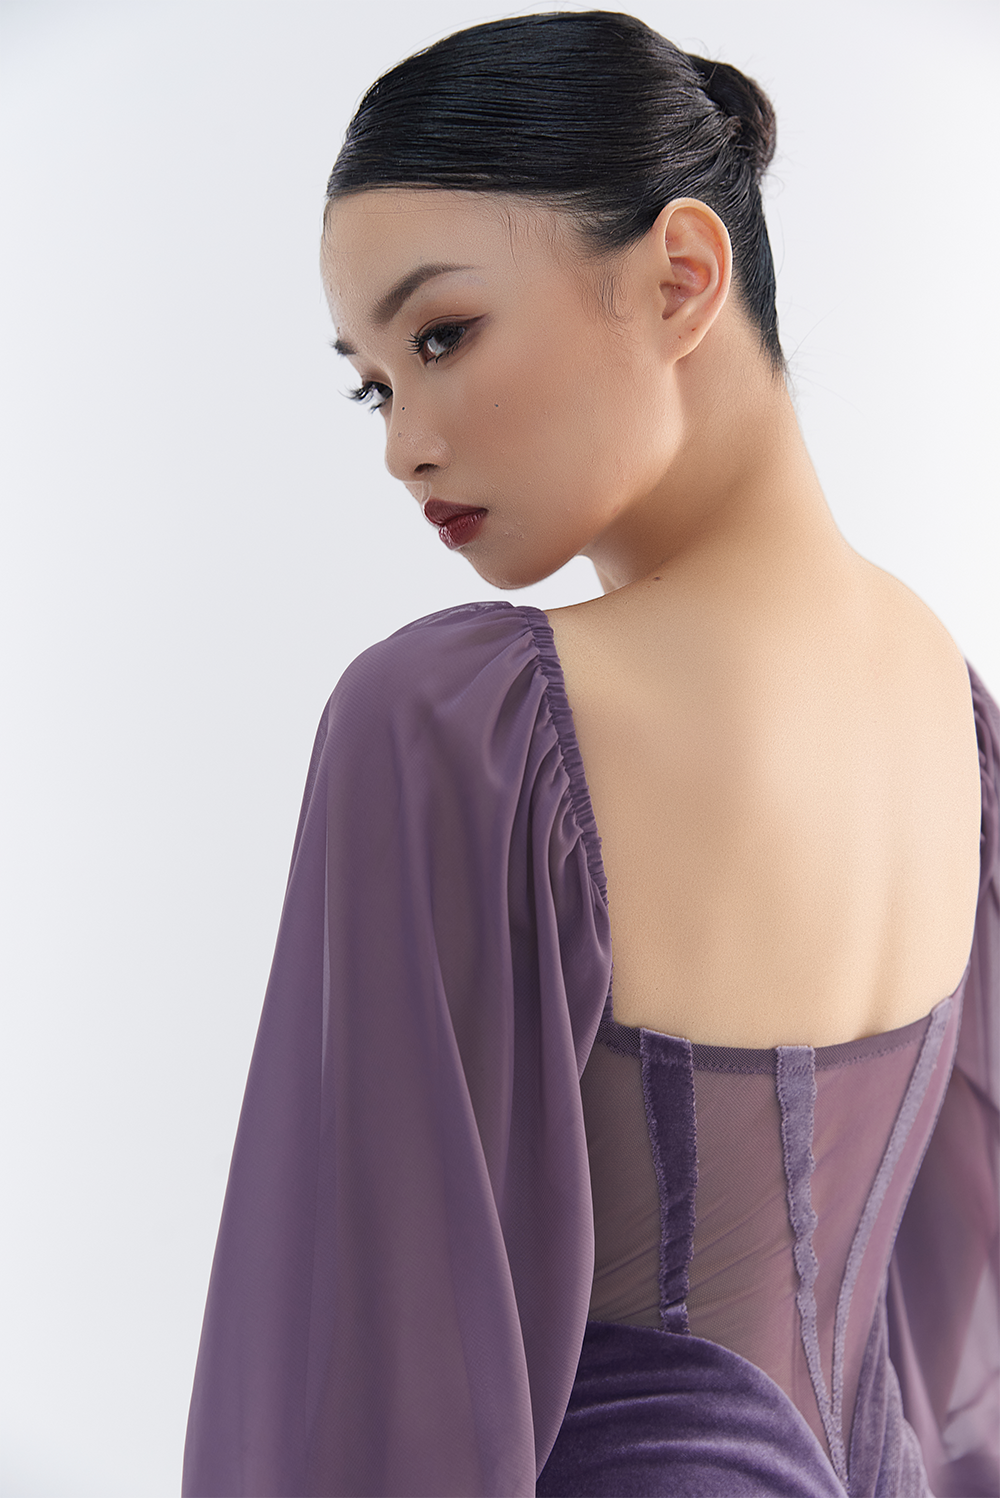 DANCE QUEEN 566-2 Tailor Made Light Purple Dress